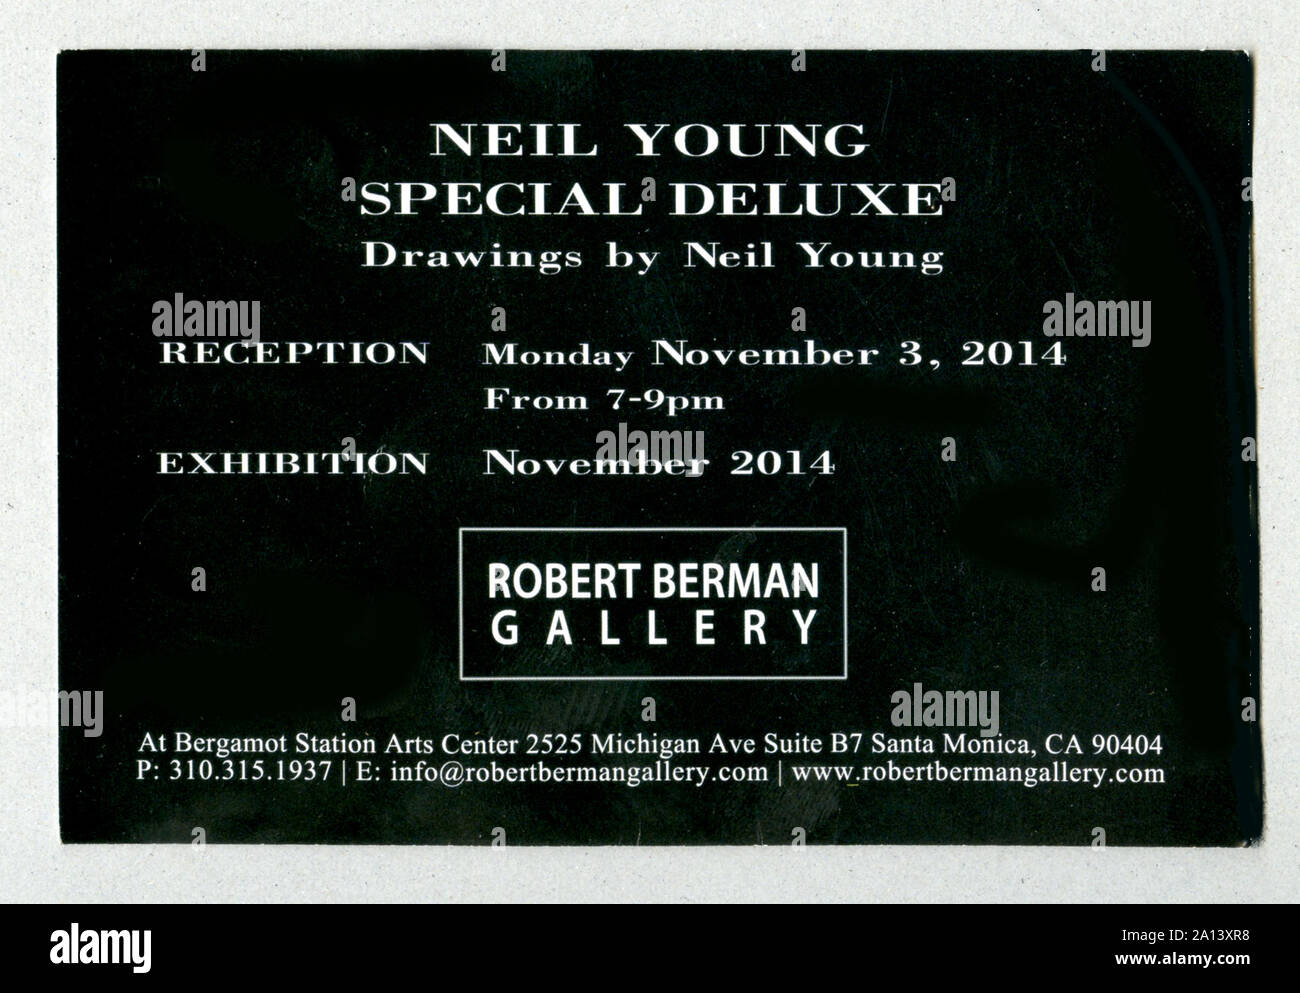 Gallery annuncio della mostra Arte da rock star Neil Young a Robert Berman Gallery di Santa Monica, CA,2014 Foto Stock